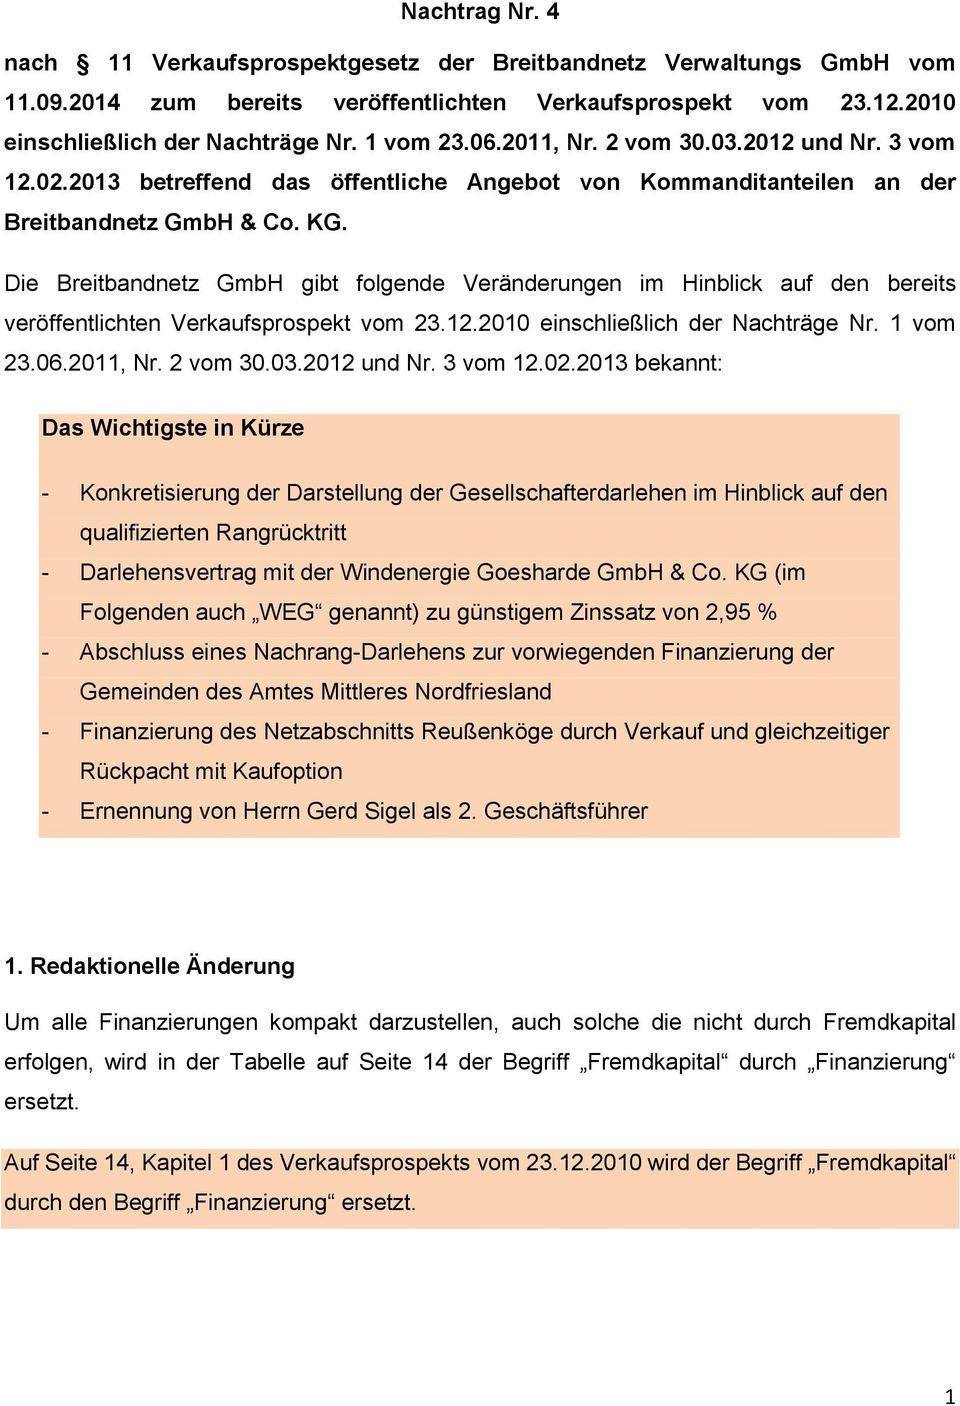 Die Breitbandnetz GmbH gibt folgende Veränderungen im Hinblick auf den bereits veröffentlichten Verkaufsprospekt vom 23.12.2010 einschließlich der Nachträge Nr. 1 vom 23.06.2011, Nr. 2 vom 30.03.